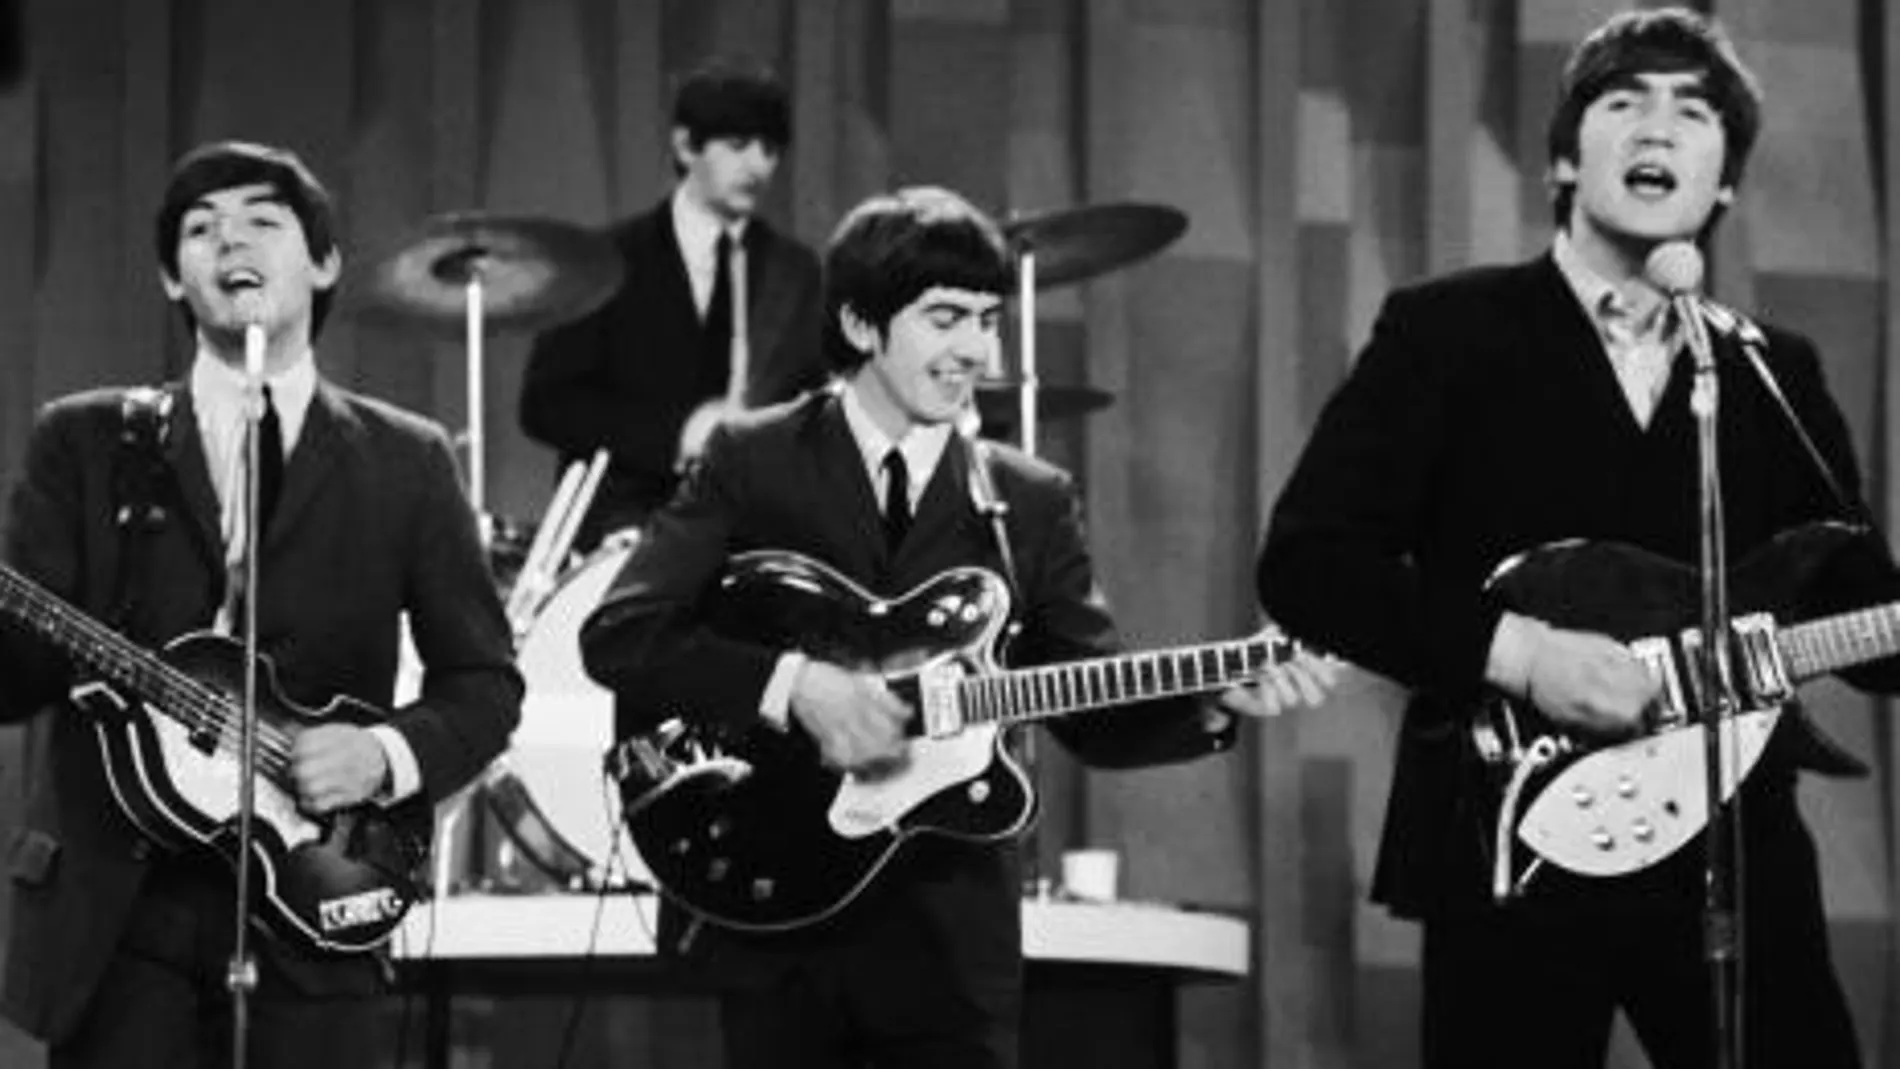 Los Beatles durante su célebre actuación en el show de Ed Sullivan en 1964